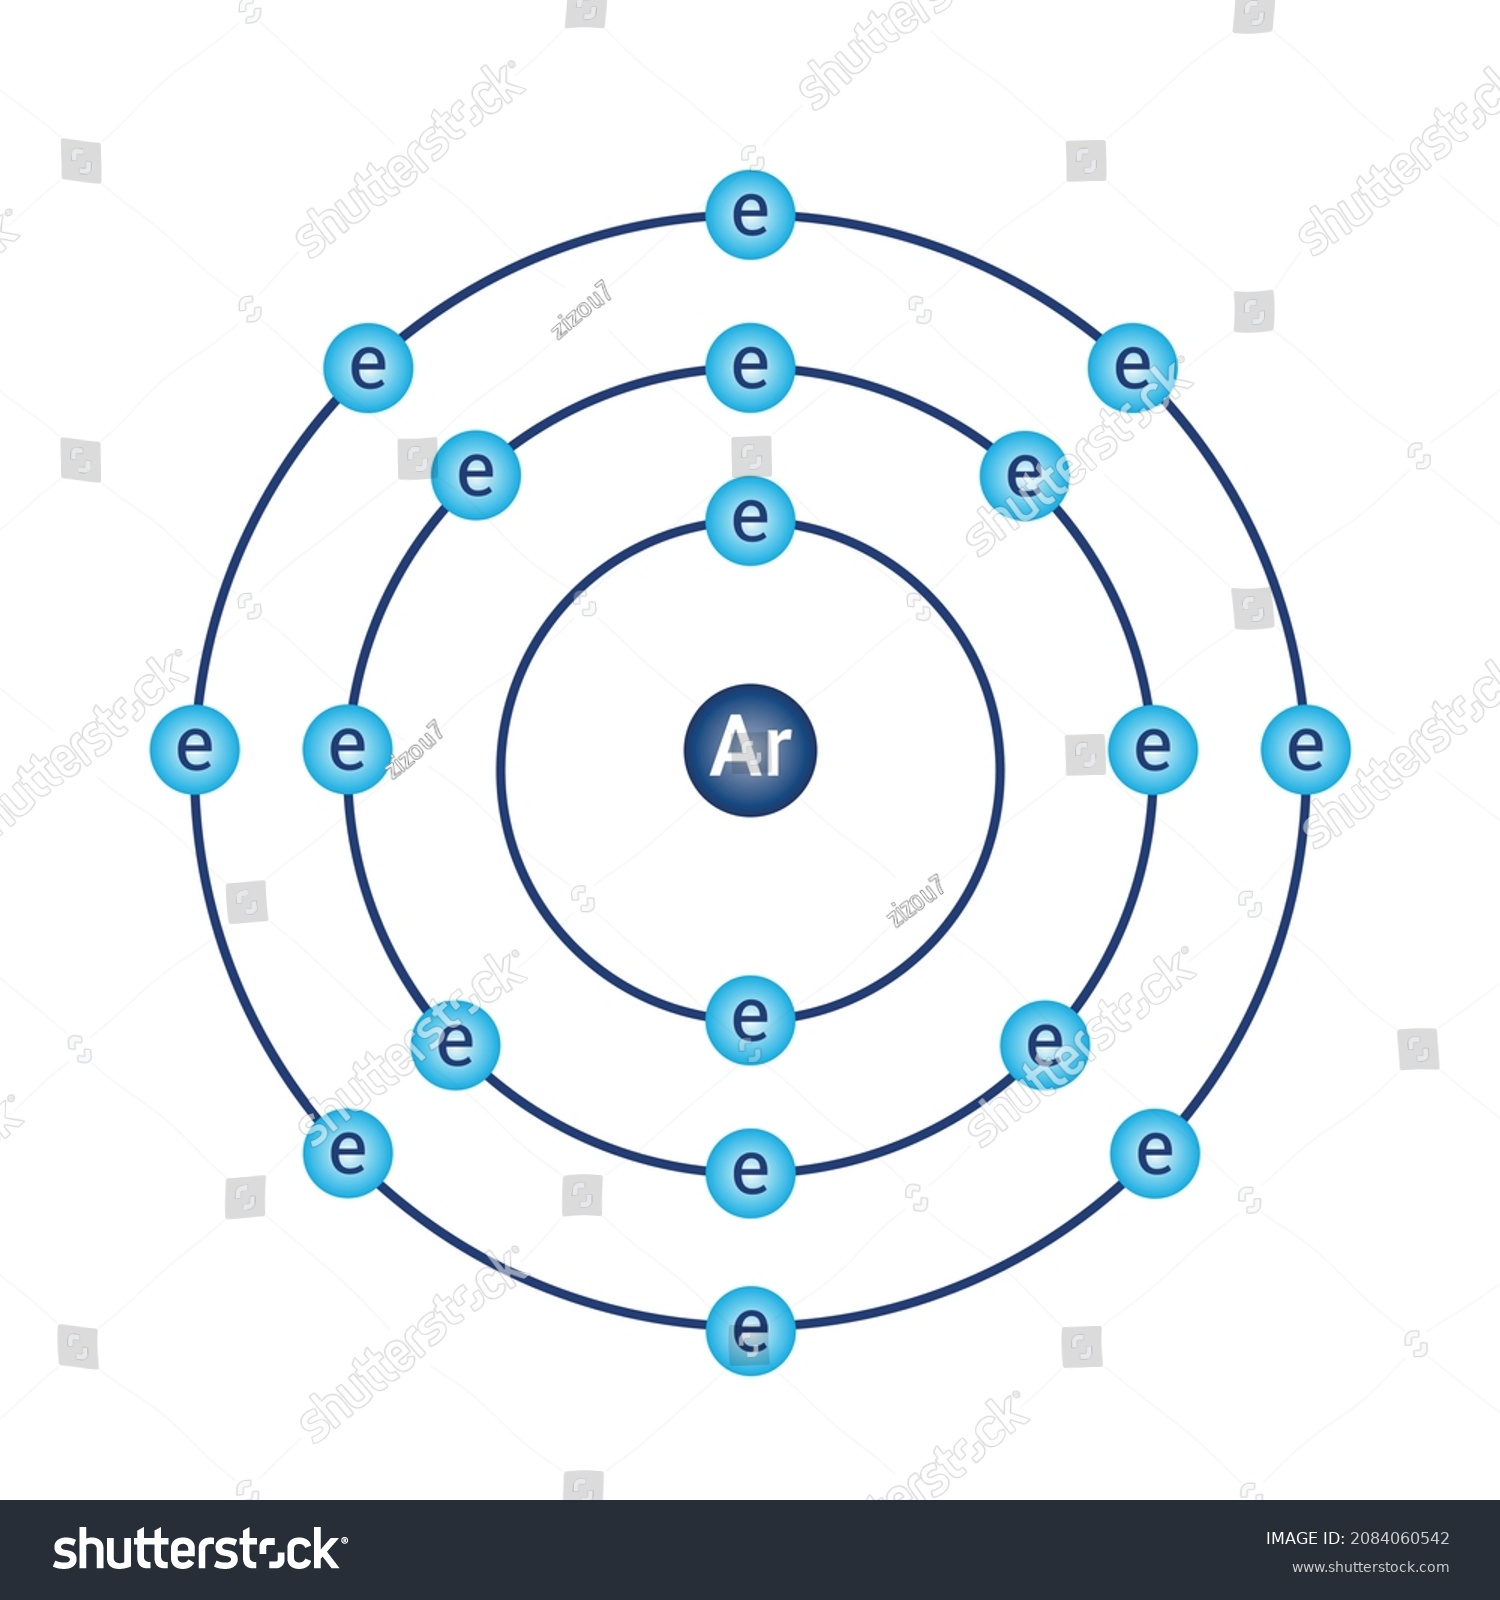 bohr diagram for argon